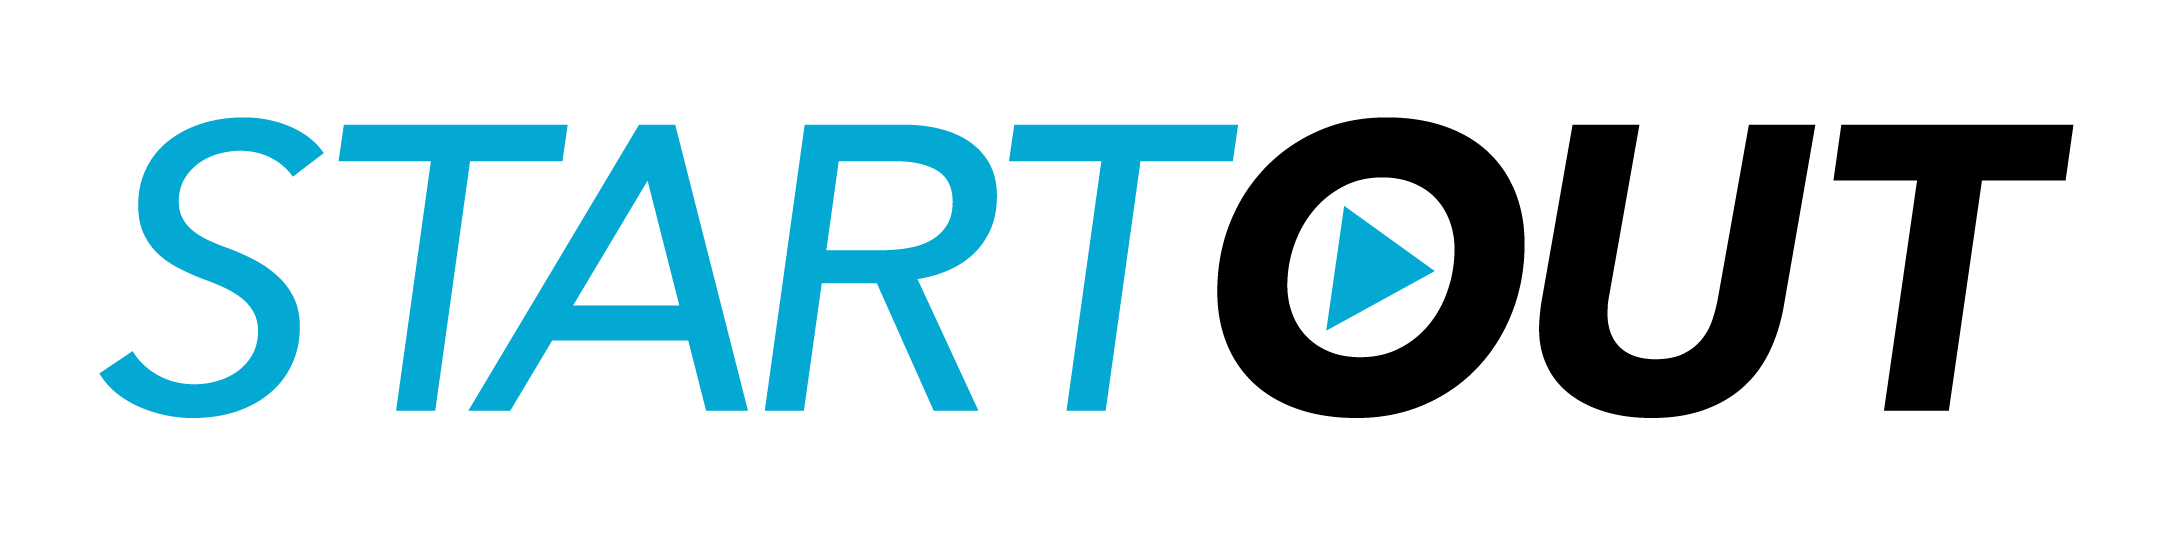 StartOut_logo_Primary